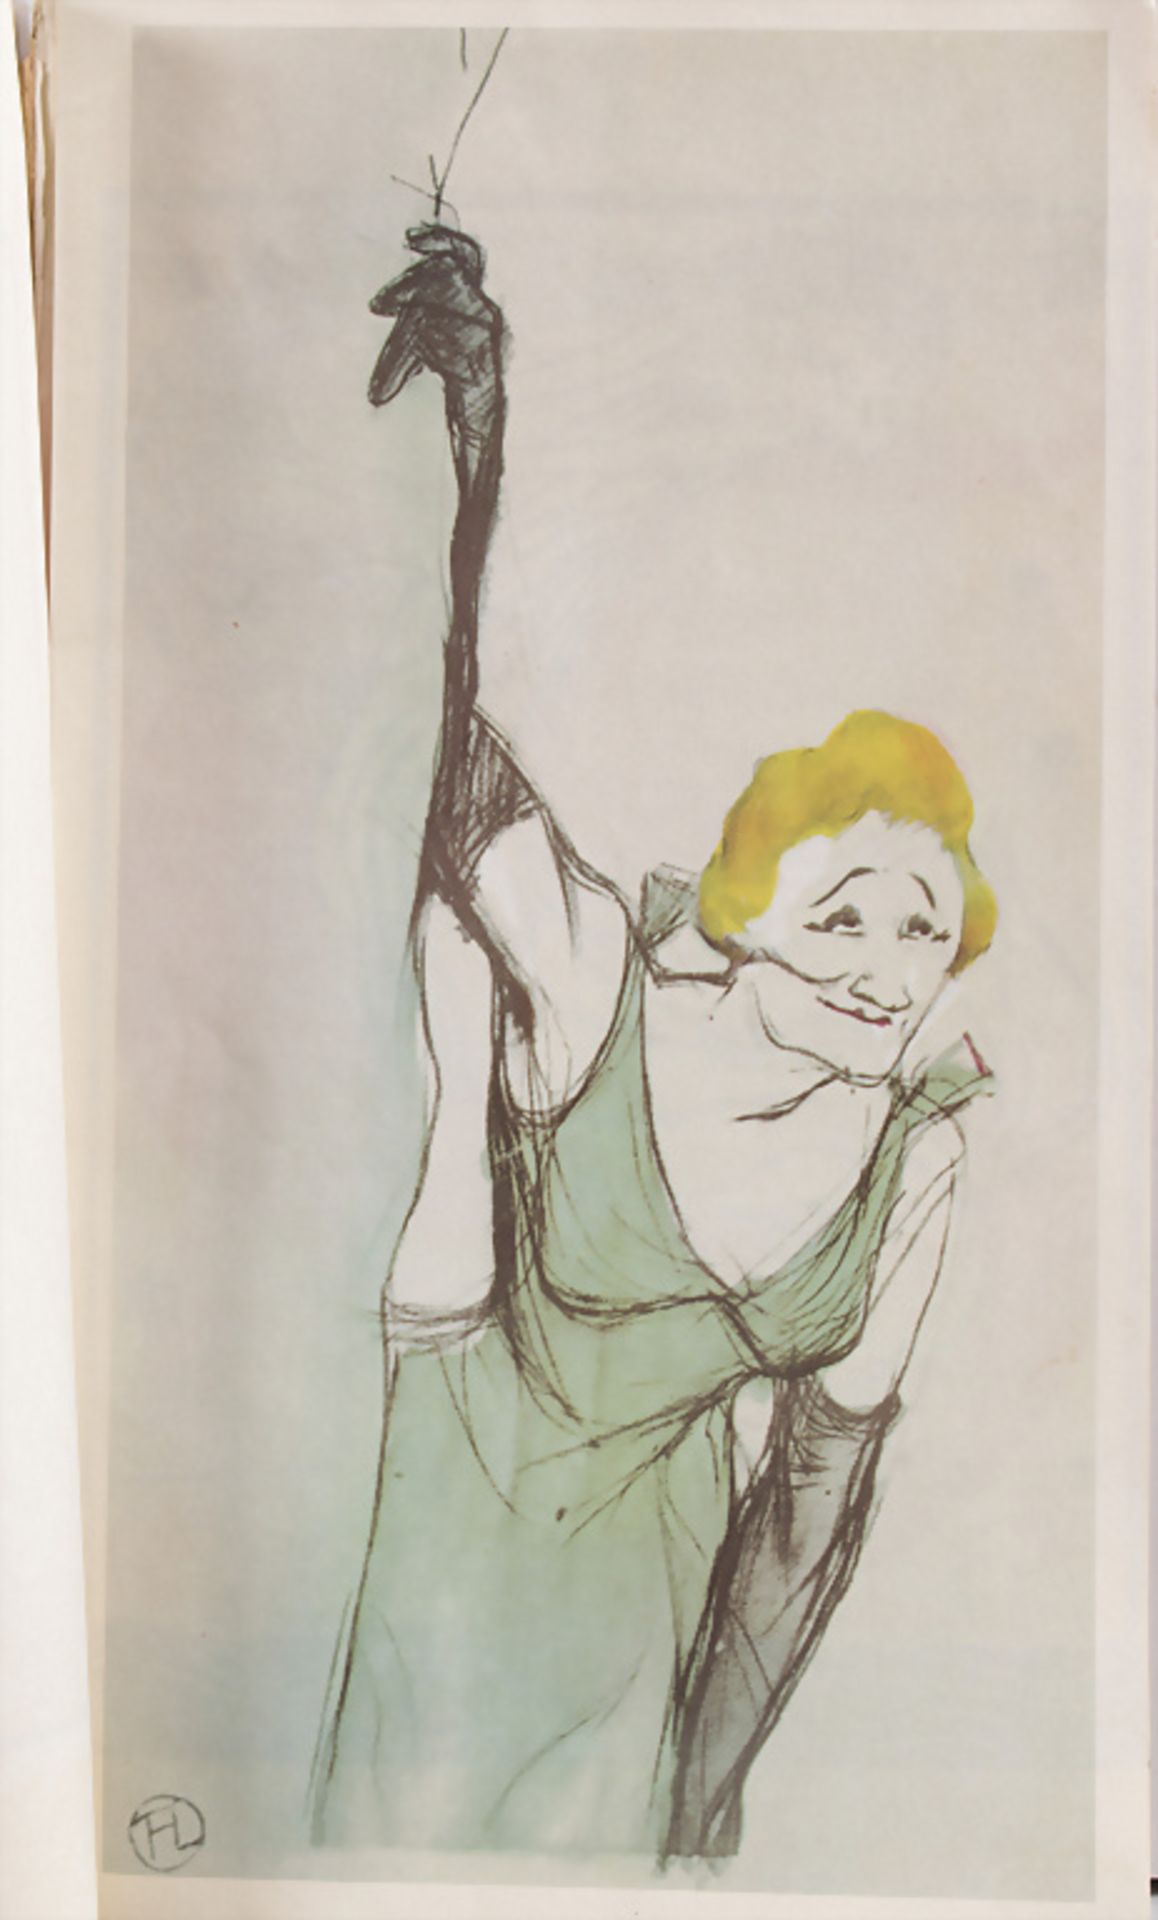 Jugendstil Sammlung Kunstblätter / A collection of Art Nouveau art prints - Image 2 of 4